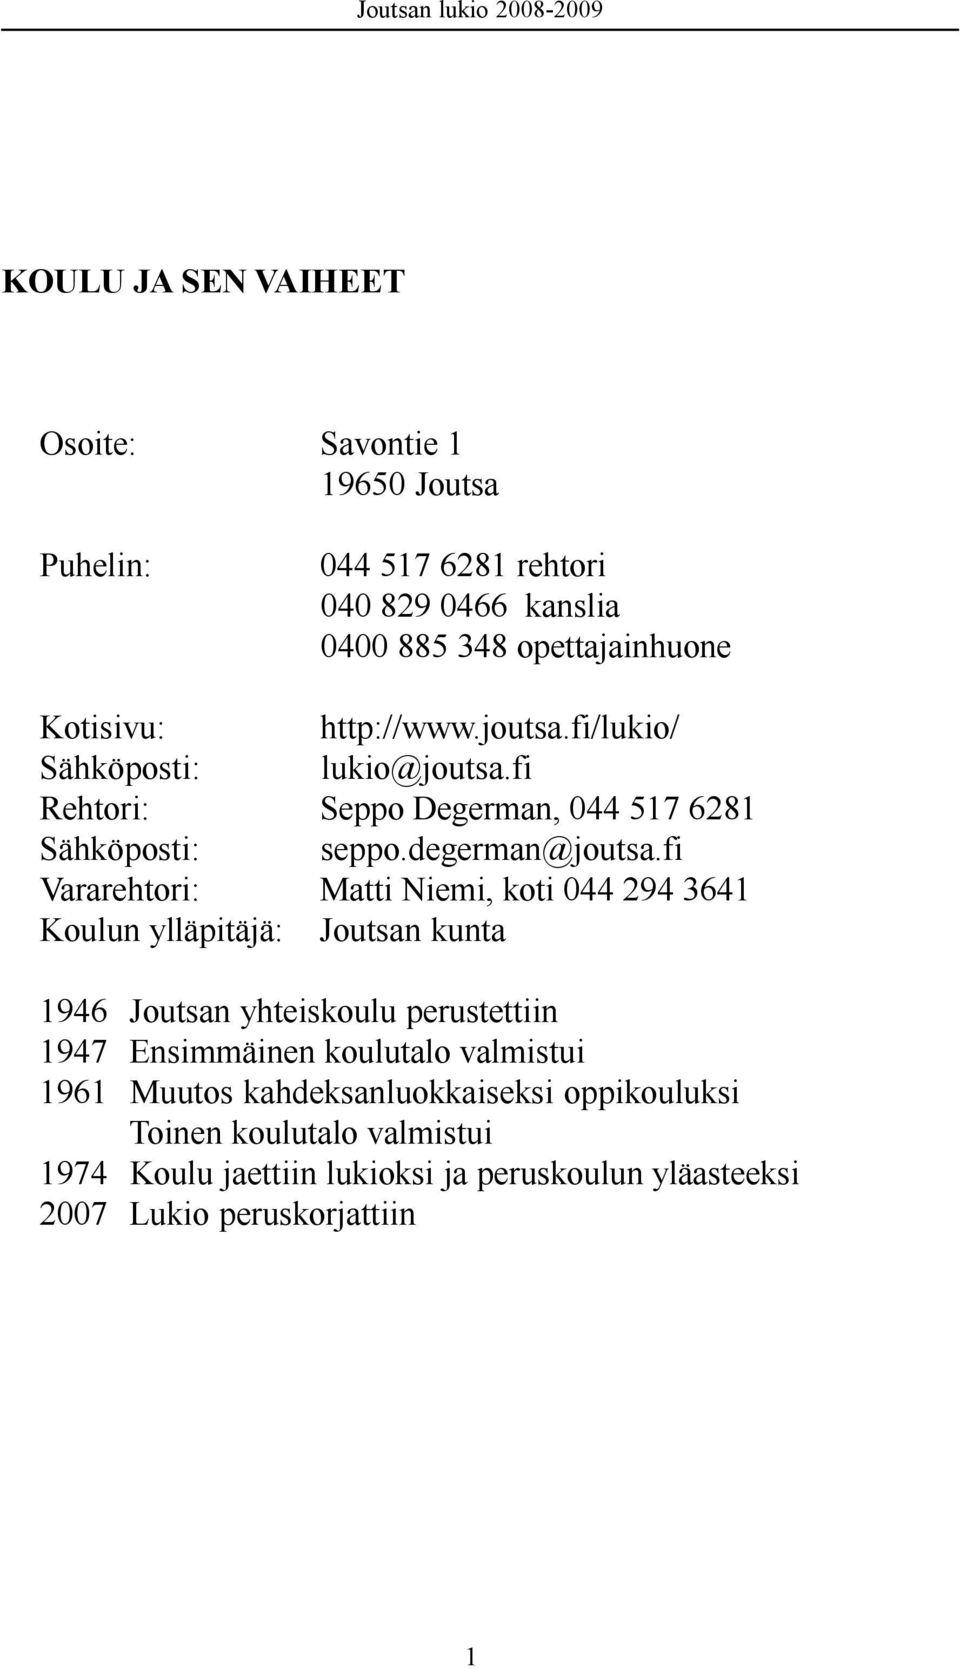 fi Vararehtori: Matti Niemi, koti 044 294 3641 Koulun ylläpitäjä: Joutsan kunta 1946 Joutsan yhteiskoulu perustettiin 1947 Ensimmäinen koulutalo